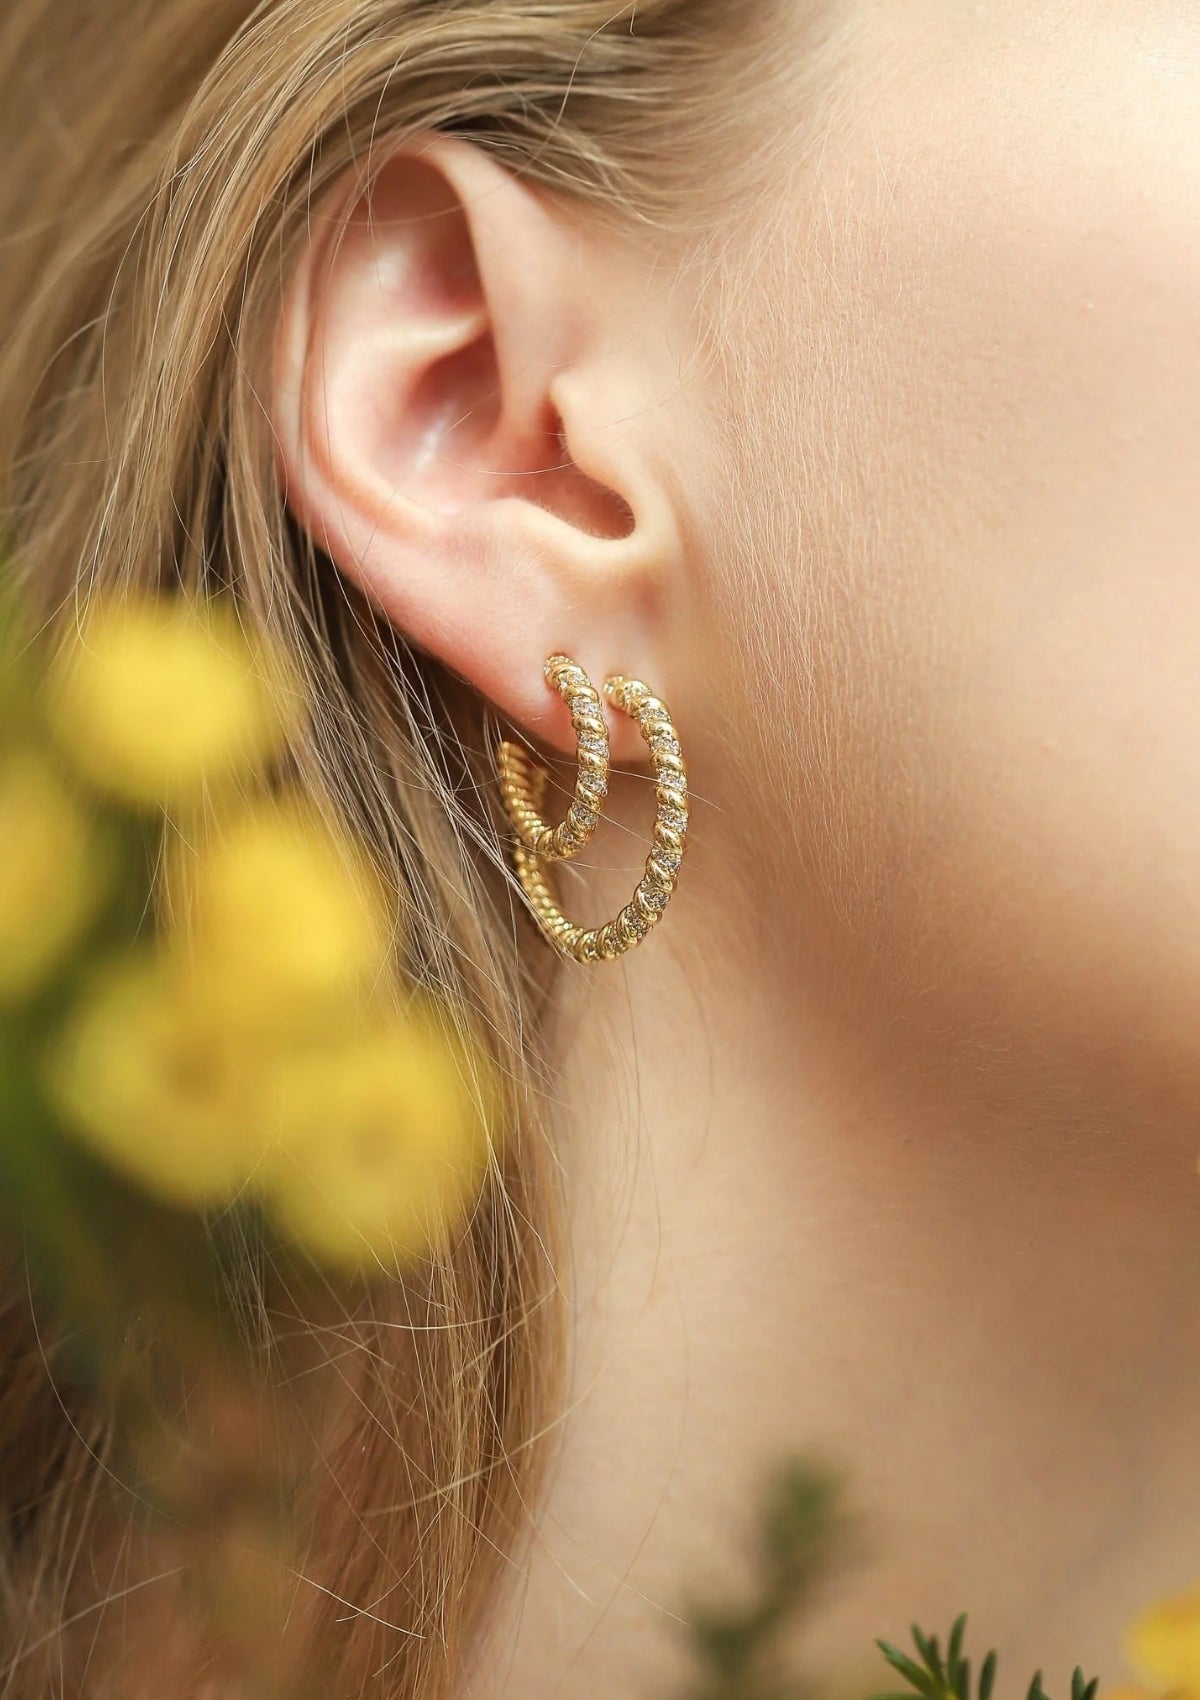 Gold Twist Hoop Earrings with CZ -Tai Rittichai- Ruby Jane-